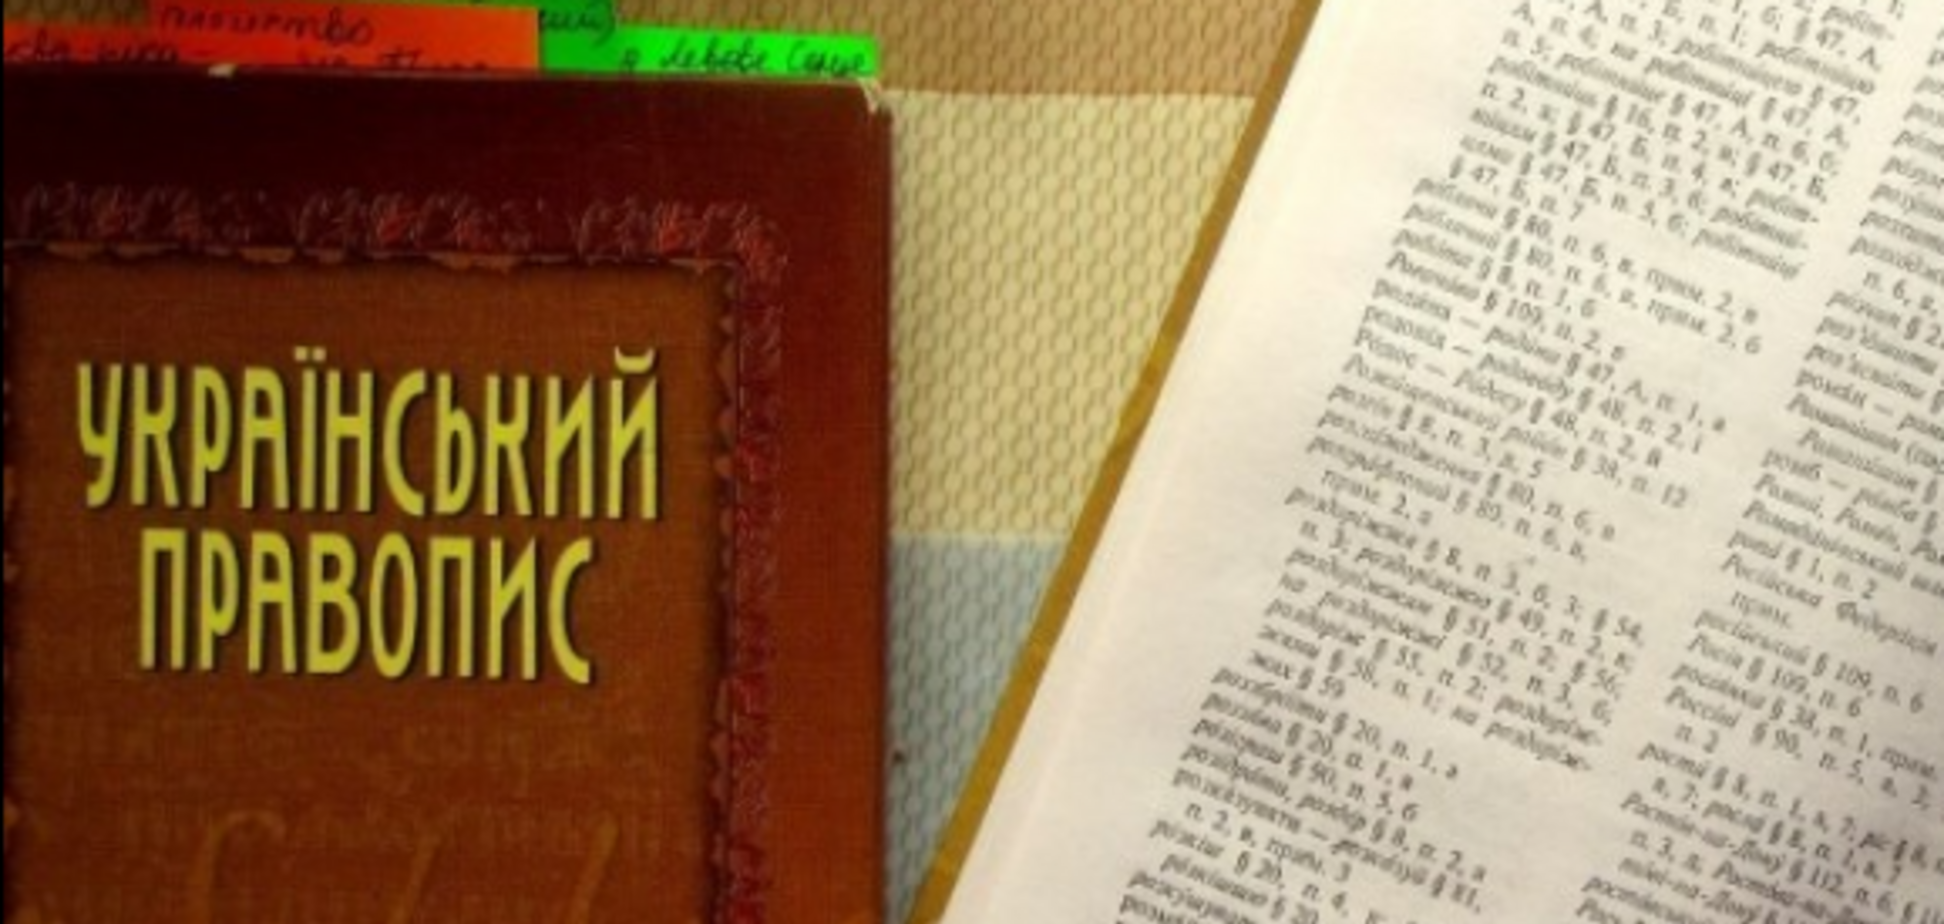 Мати учениці оскаржила в суді нові правила українського правопису